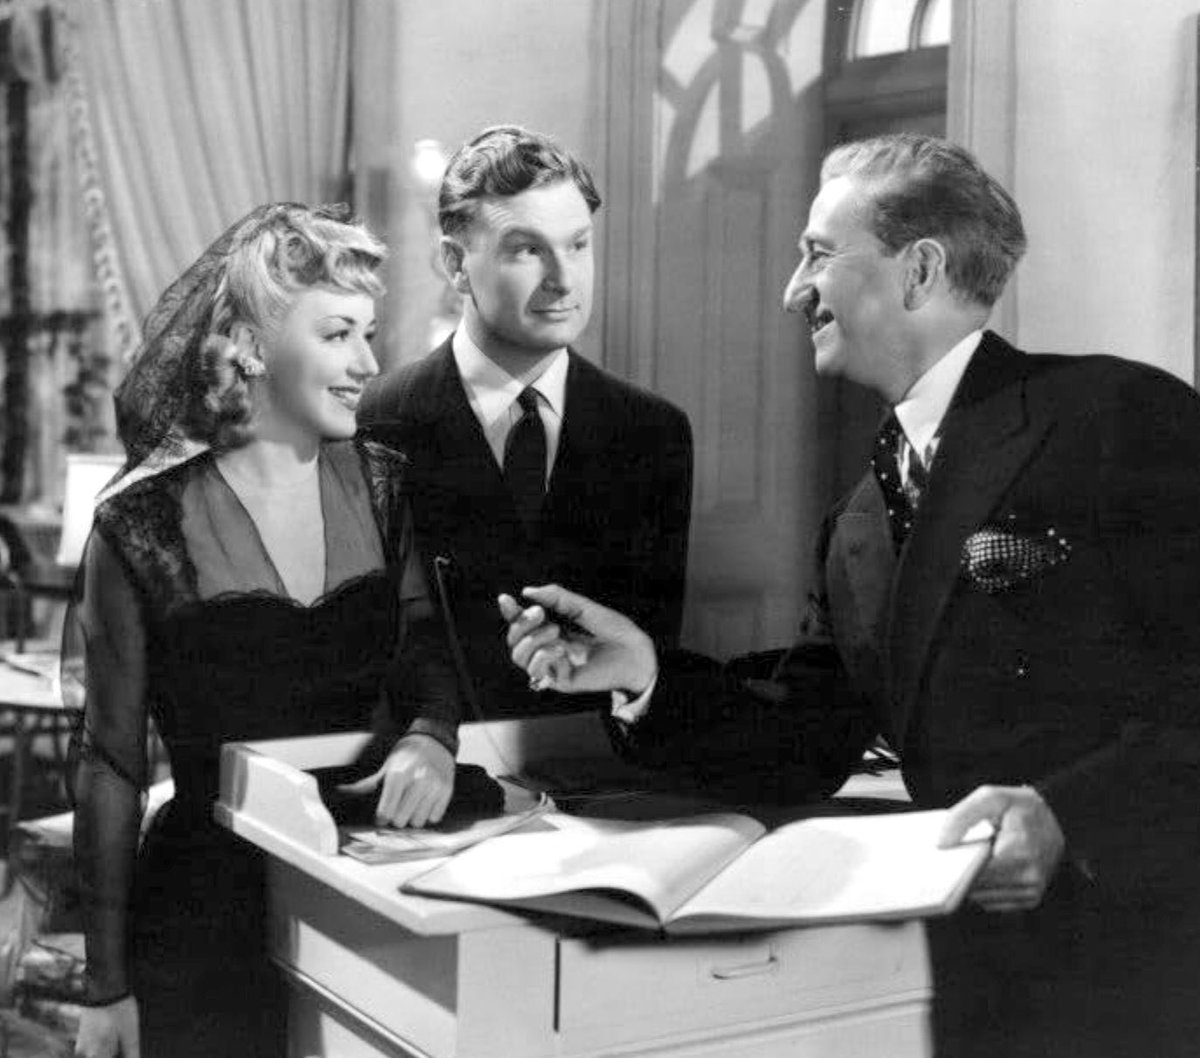 Anne Shirley, Eddie Albert, Olin Howland “LADY BODYGUARD” (1943) dir. William Clemens

🎬 #ParamountPictures